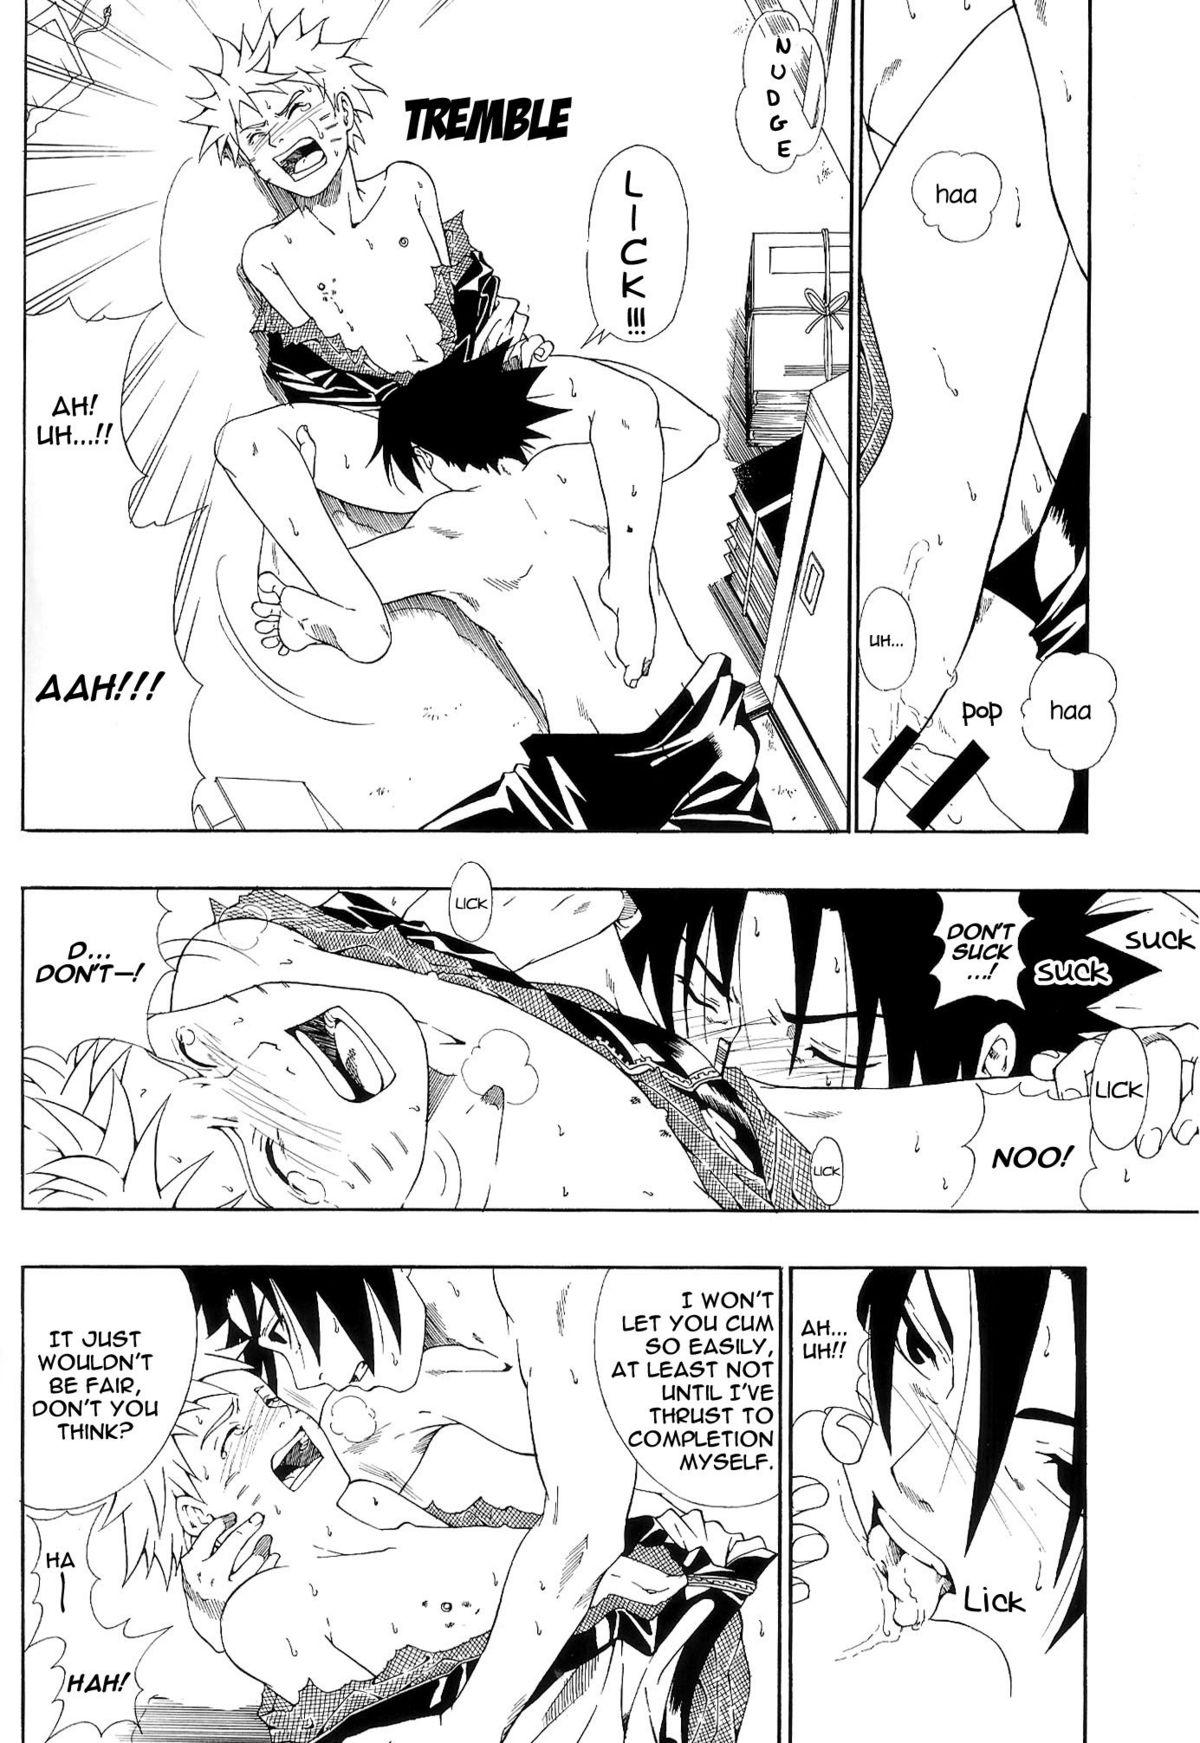 Foot Fetish ERO ERO²: Volume 1.5 (NARUTO) [Sasuke X Naruto] YAOI -ENG- - Naruto Pool - Page 9